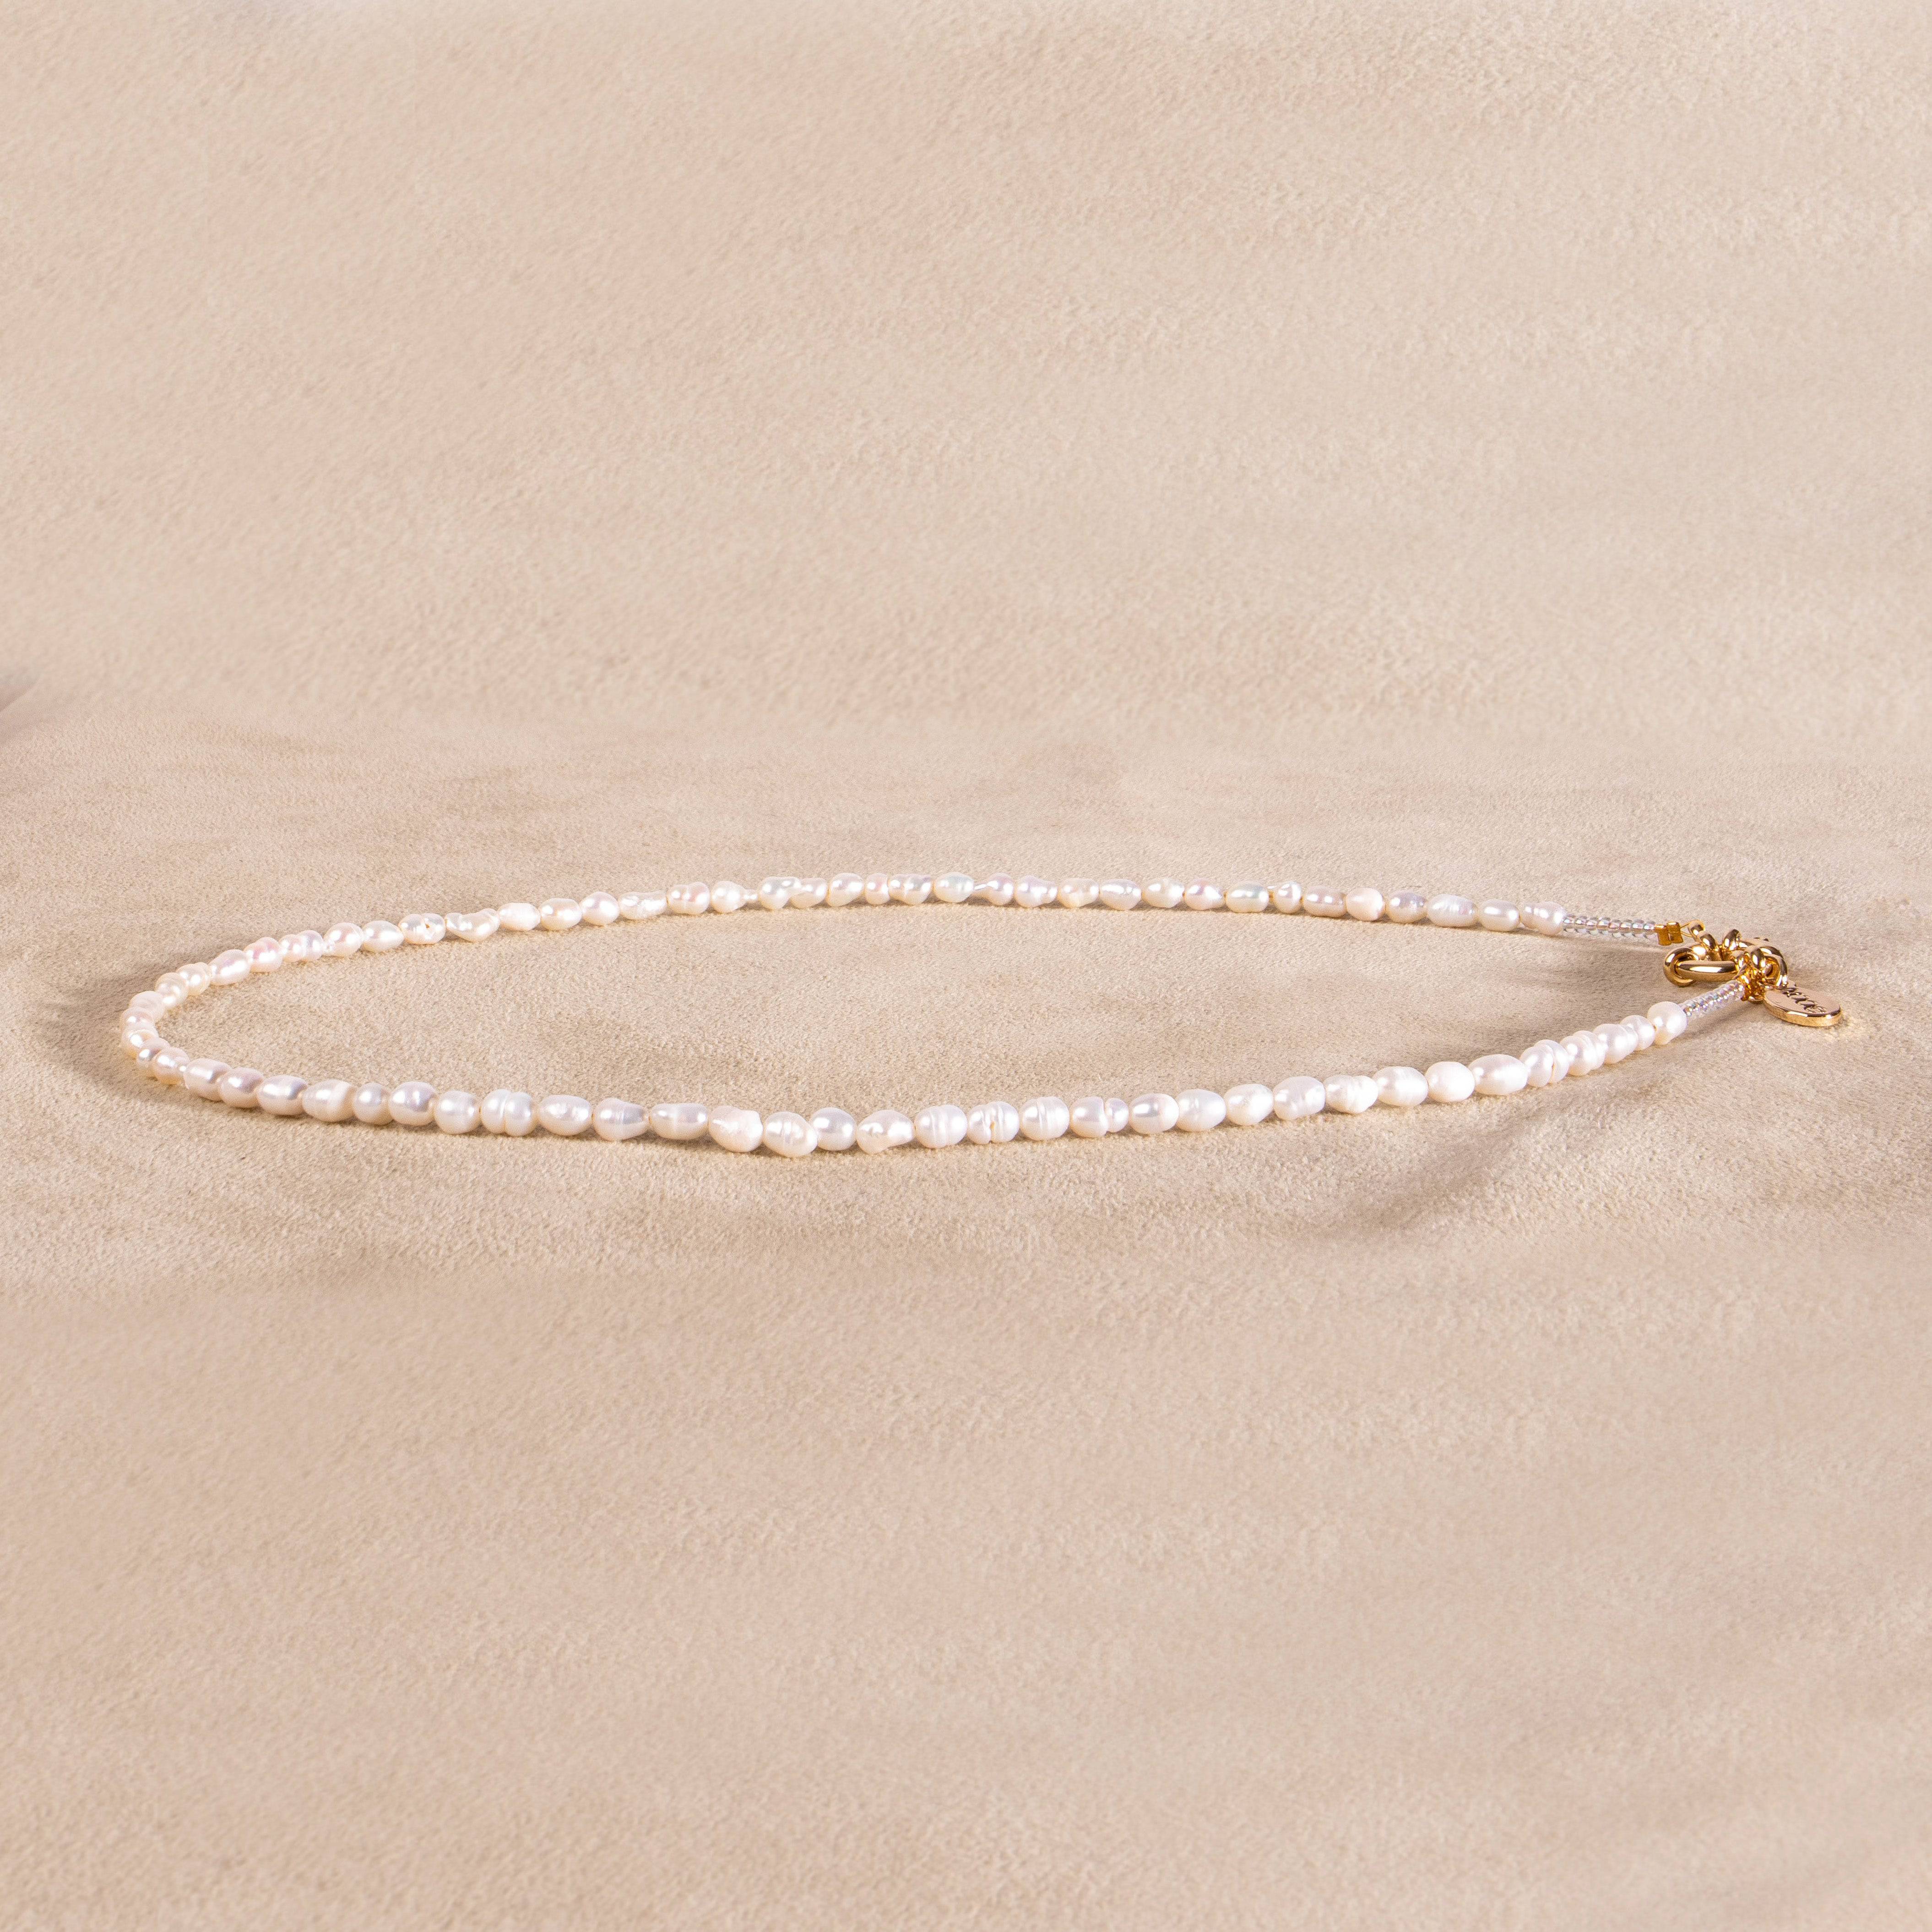 Perlenkette mit Rocailles choker gold handgemacht - NooeBerlin